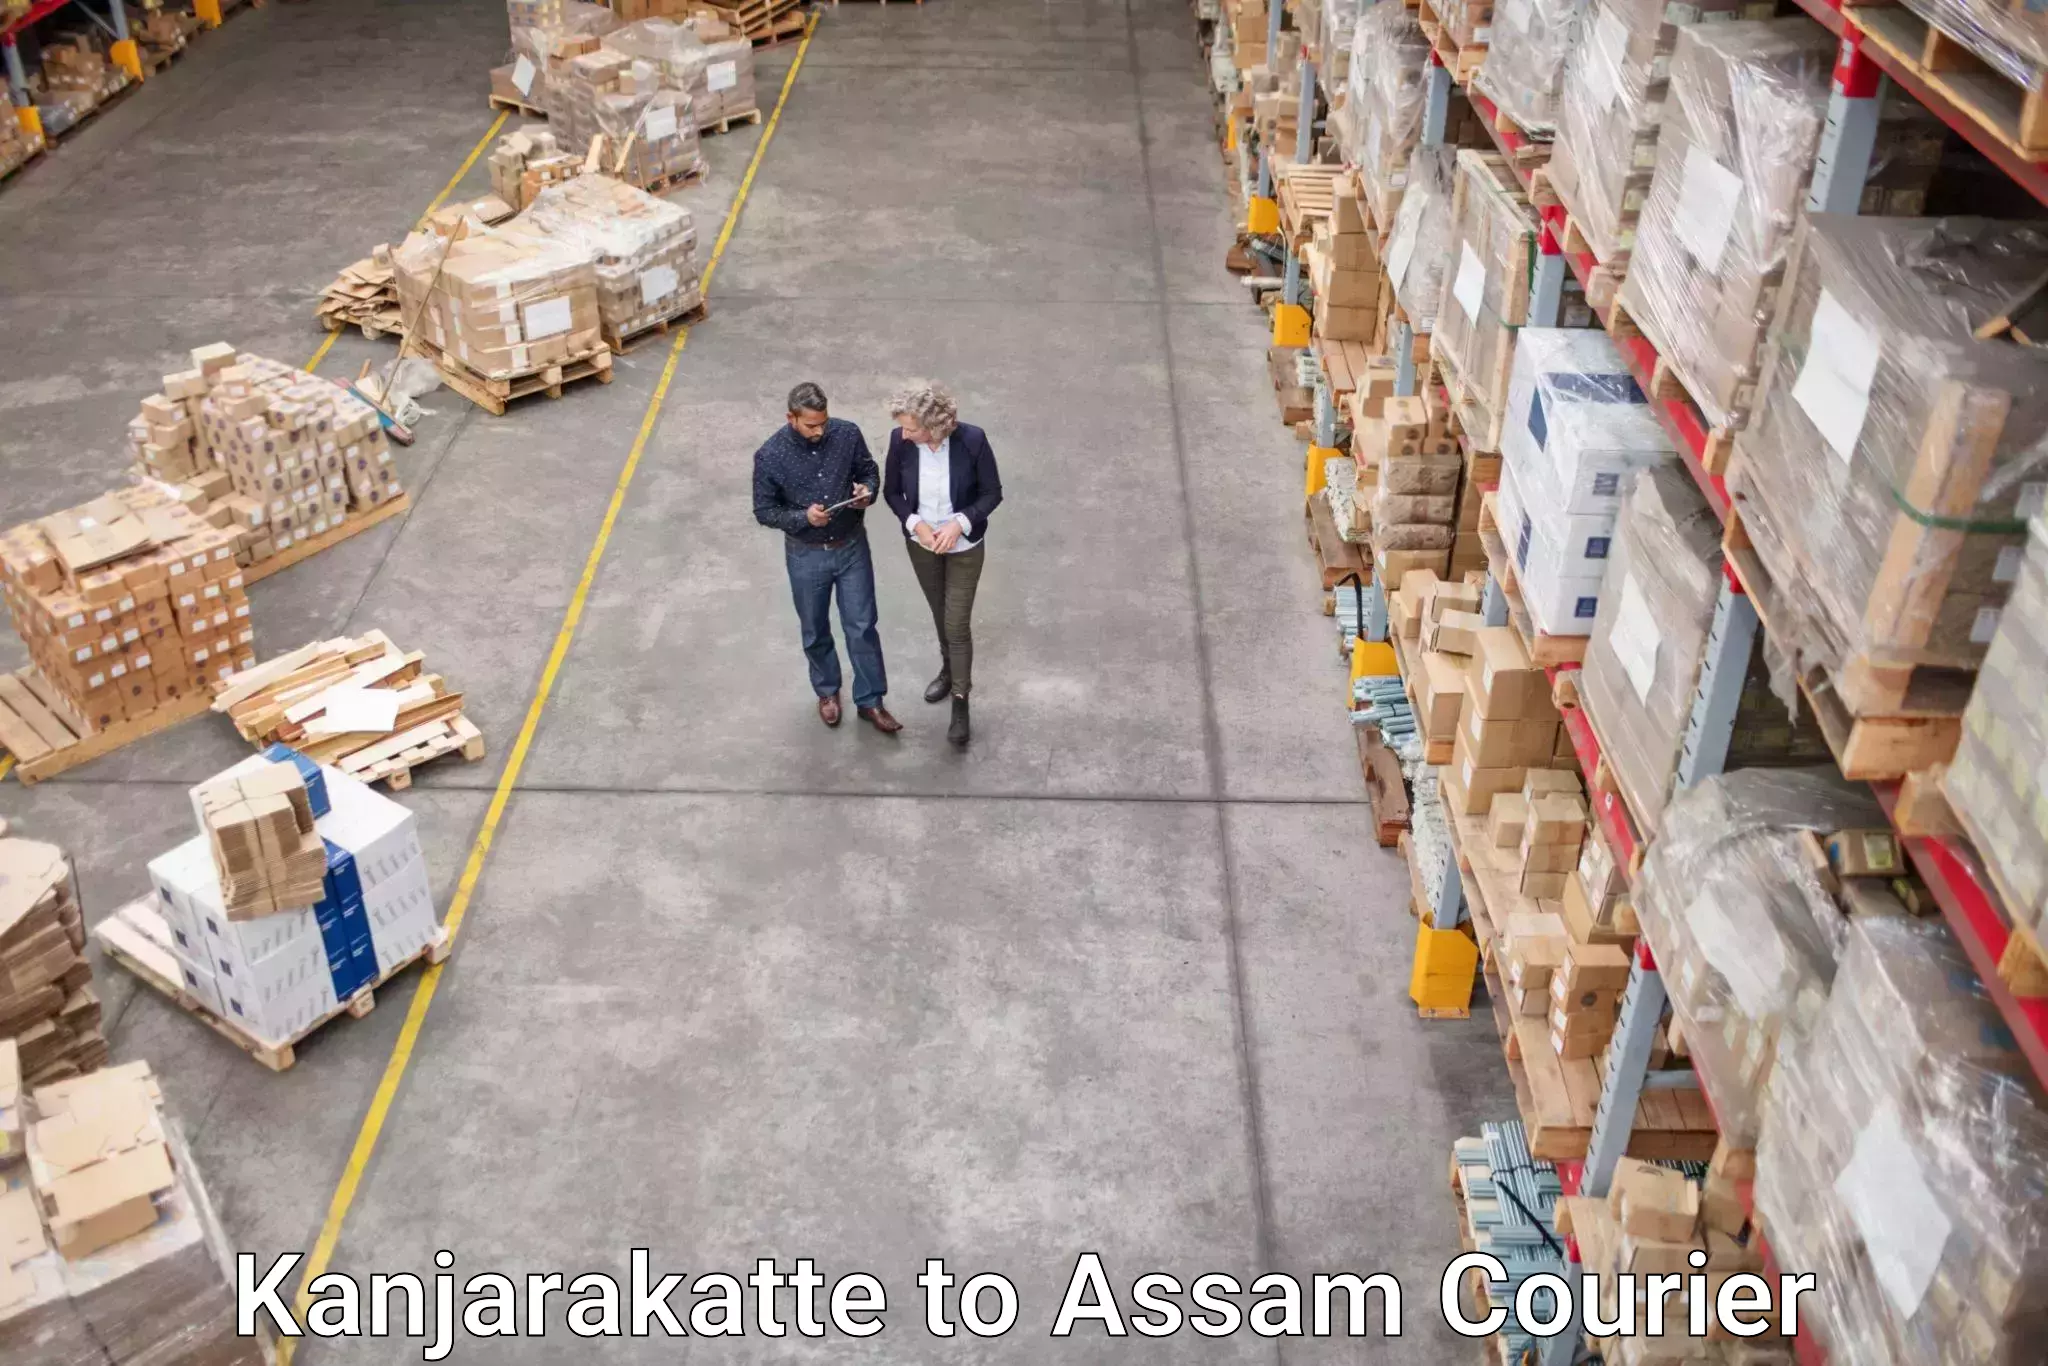 Nationwide parcel services Kanjarakatte to Assam